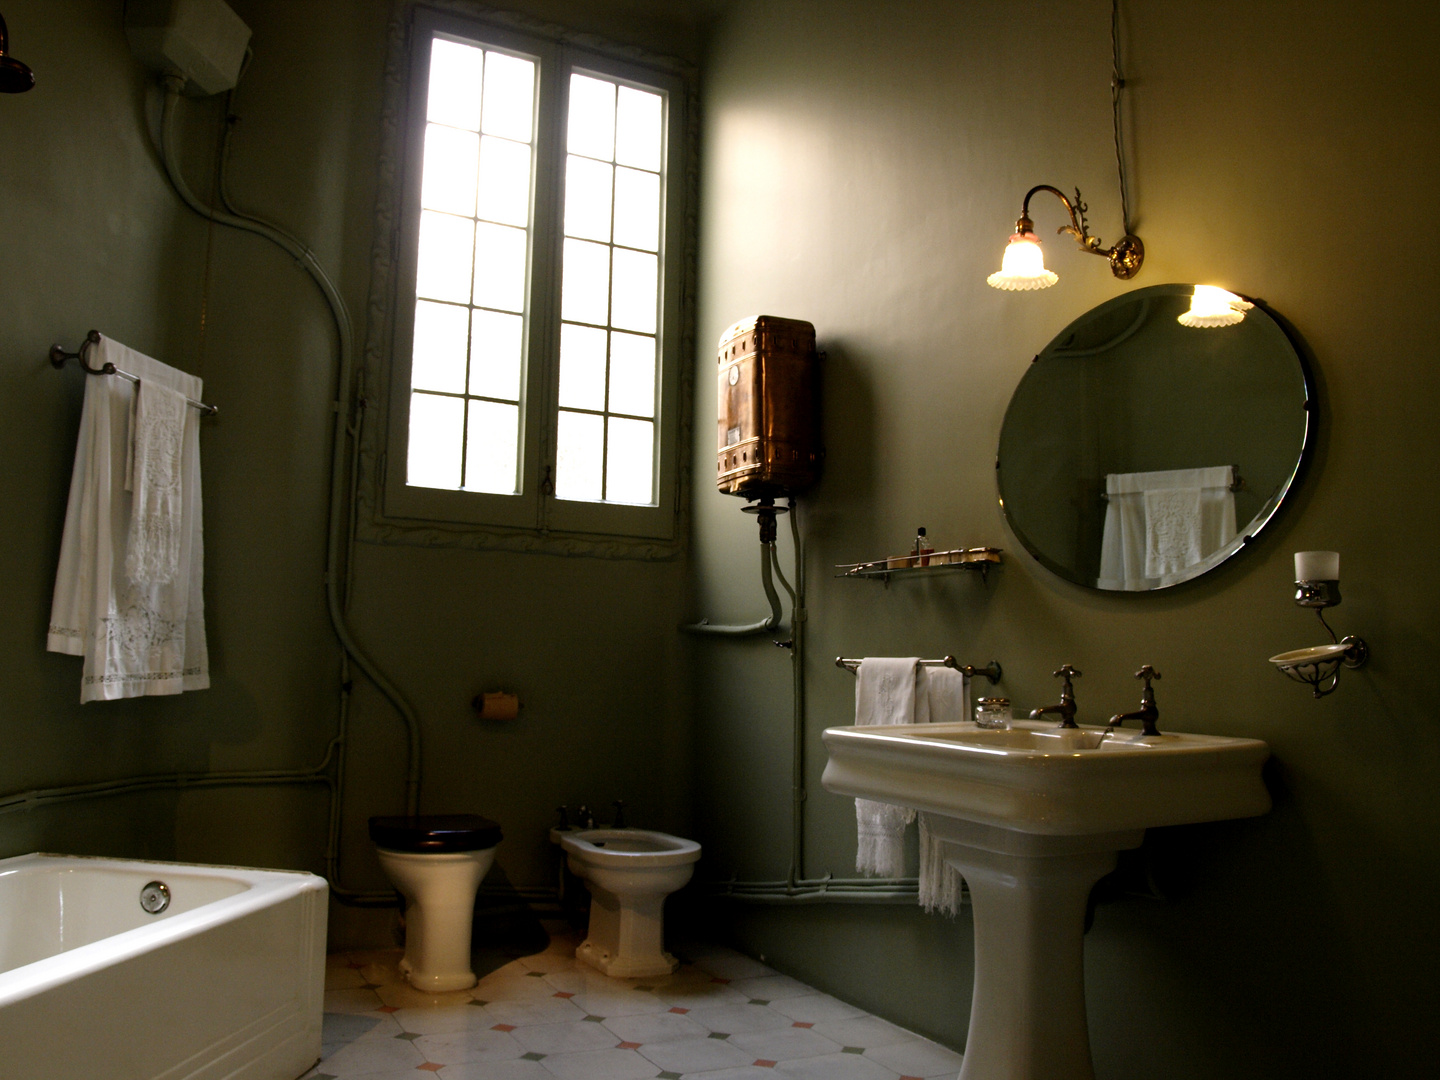 Early XX Century bathroom